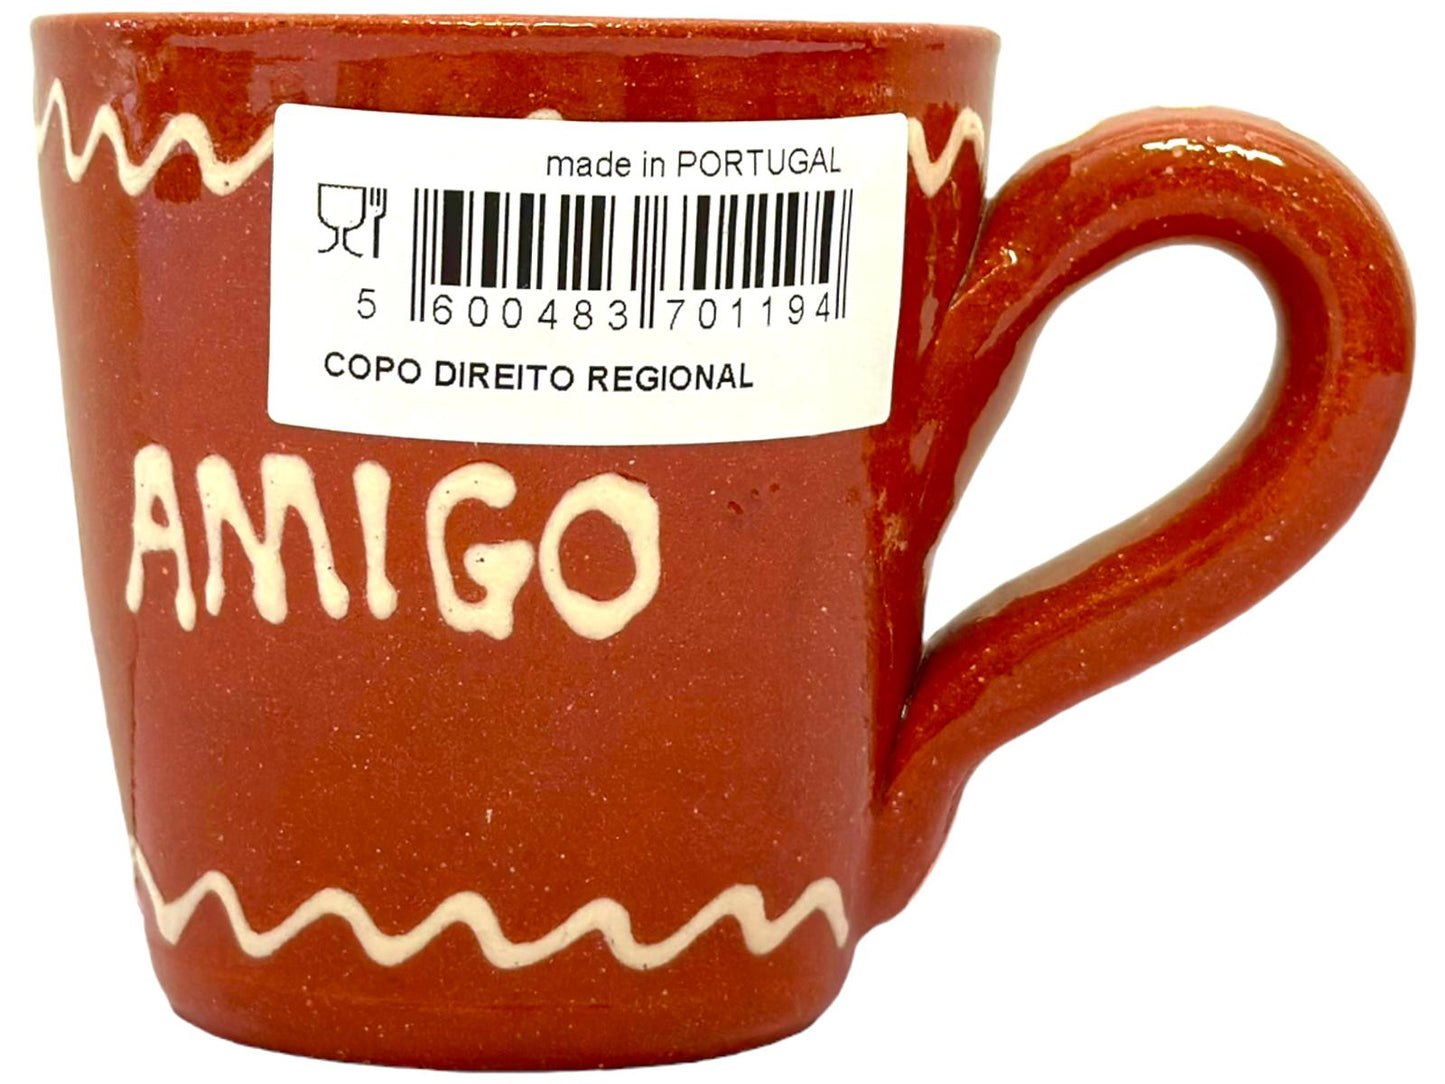 Edgar Picas  Copo Direito Bebe Meu Amigo Portuguese Terracotta Mug 8.5cm x 9cm